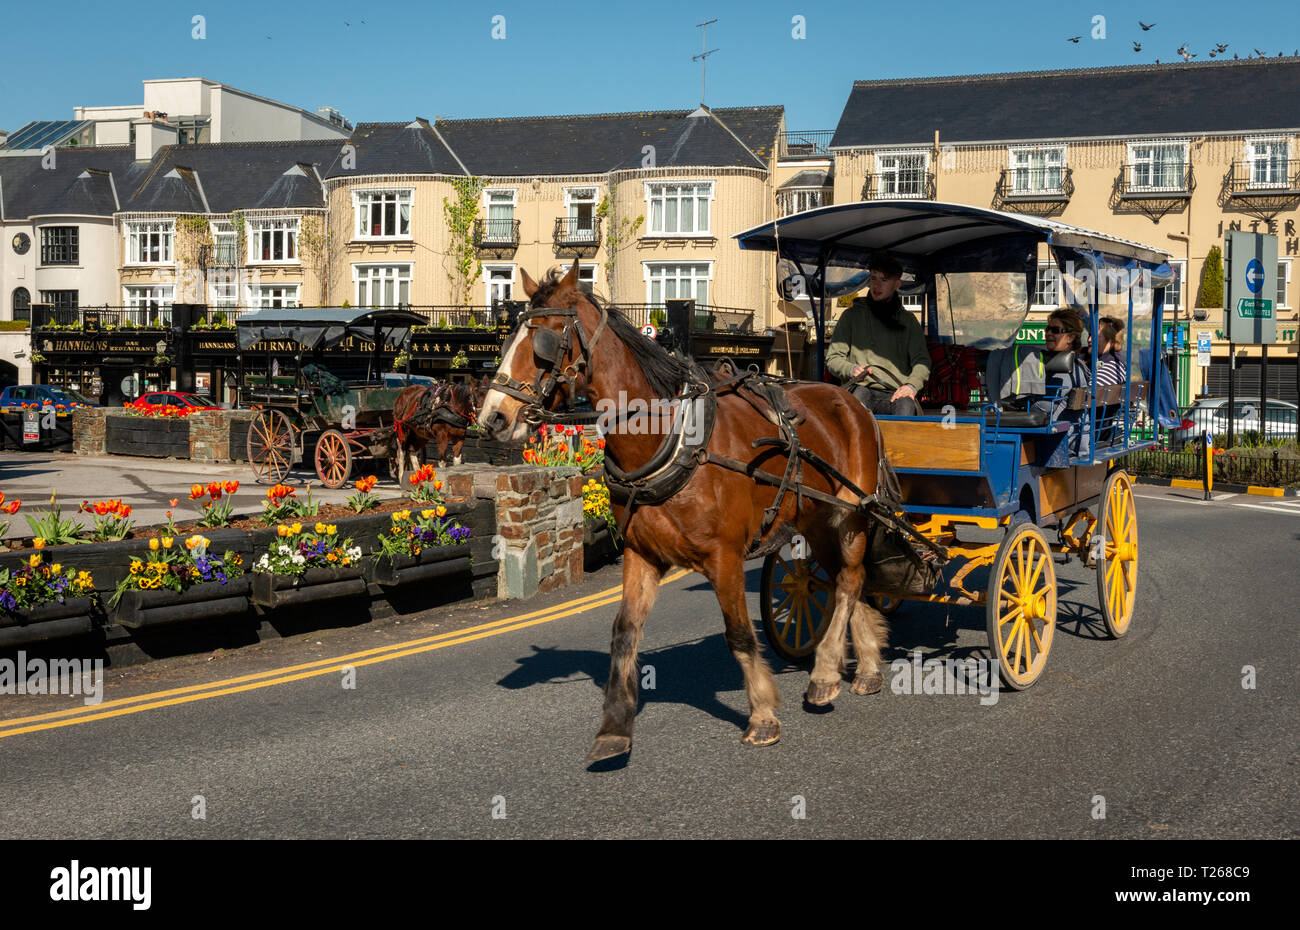 Killarey Irland und Pferdekutsche mit Touristen auf den Straßen, da die Anmietung eines jaunting Auto ist sehr beliebte touristische Aktivität in der Stadt. Stockfoto